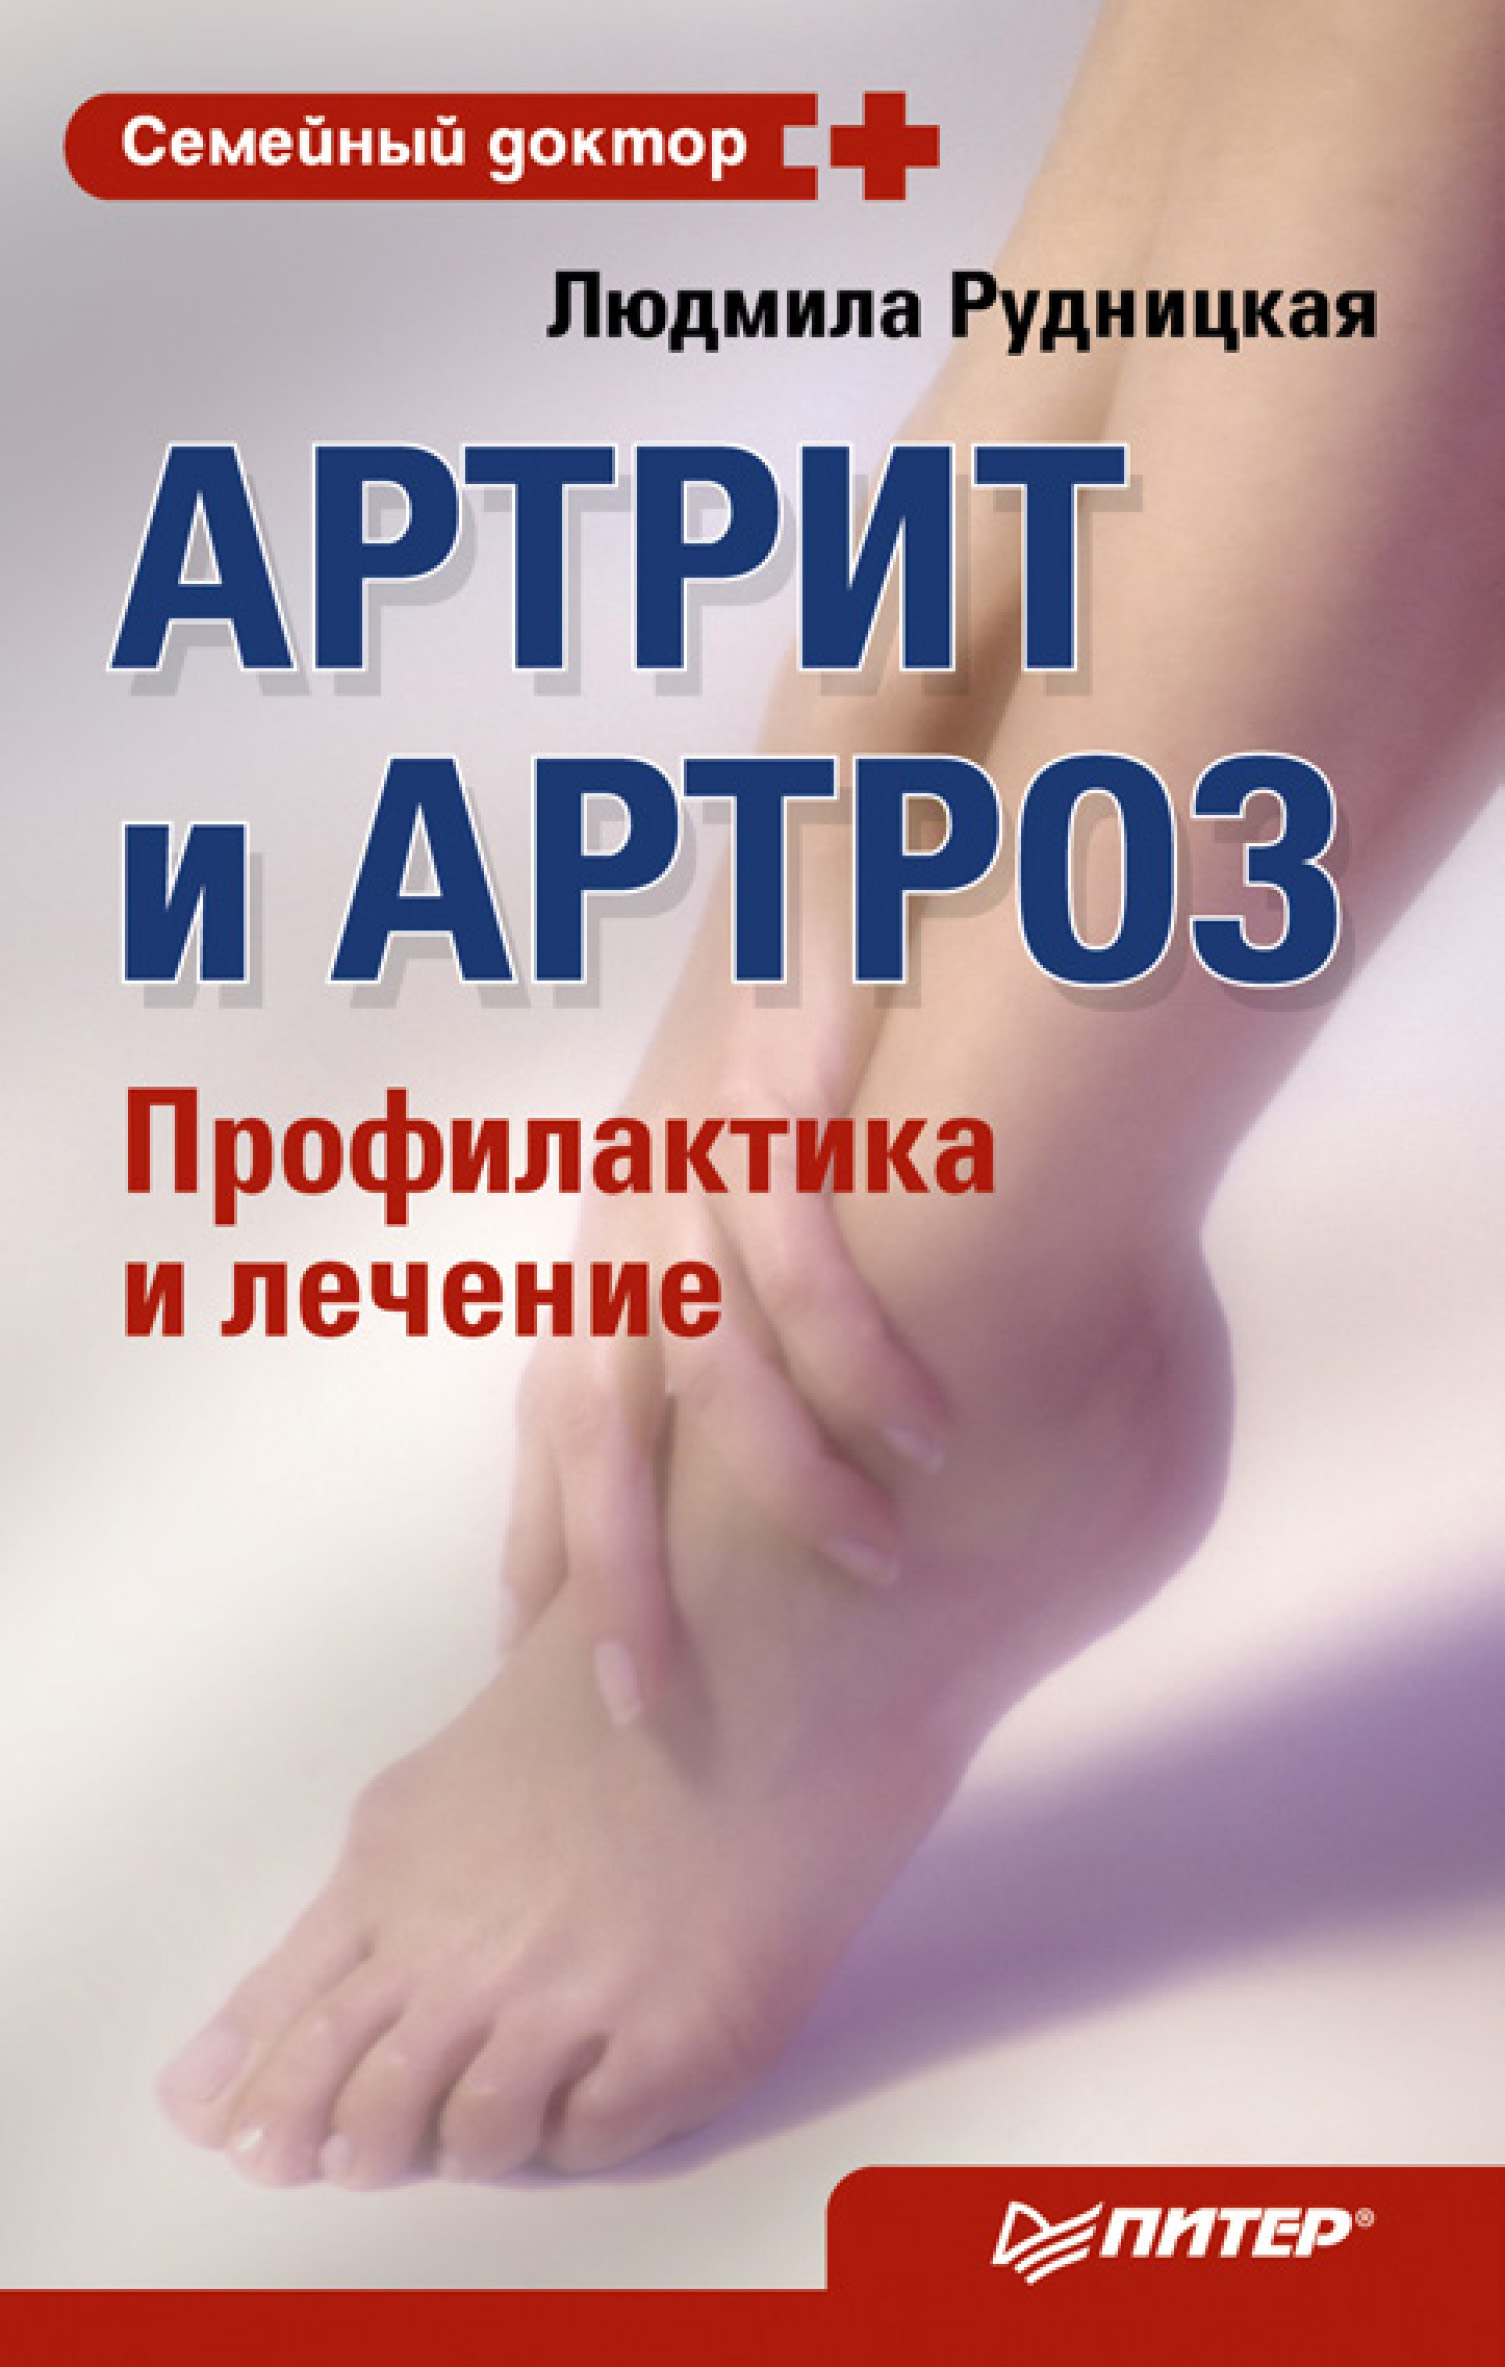 Лечение и профилактика артритов и артрозов • МЦ ВитаКор+